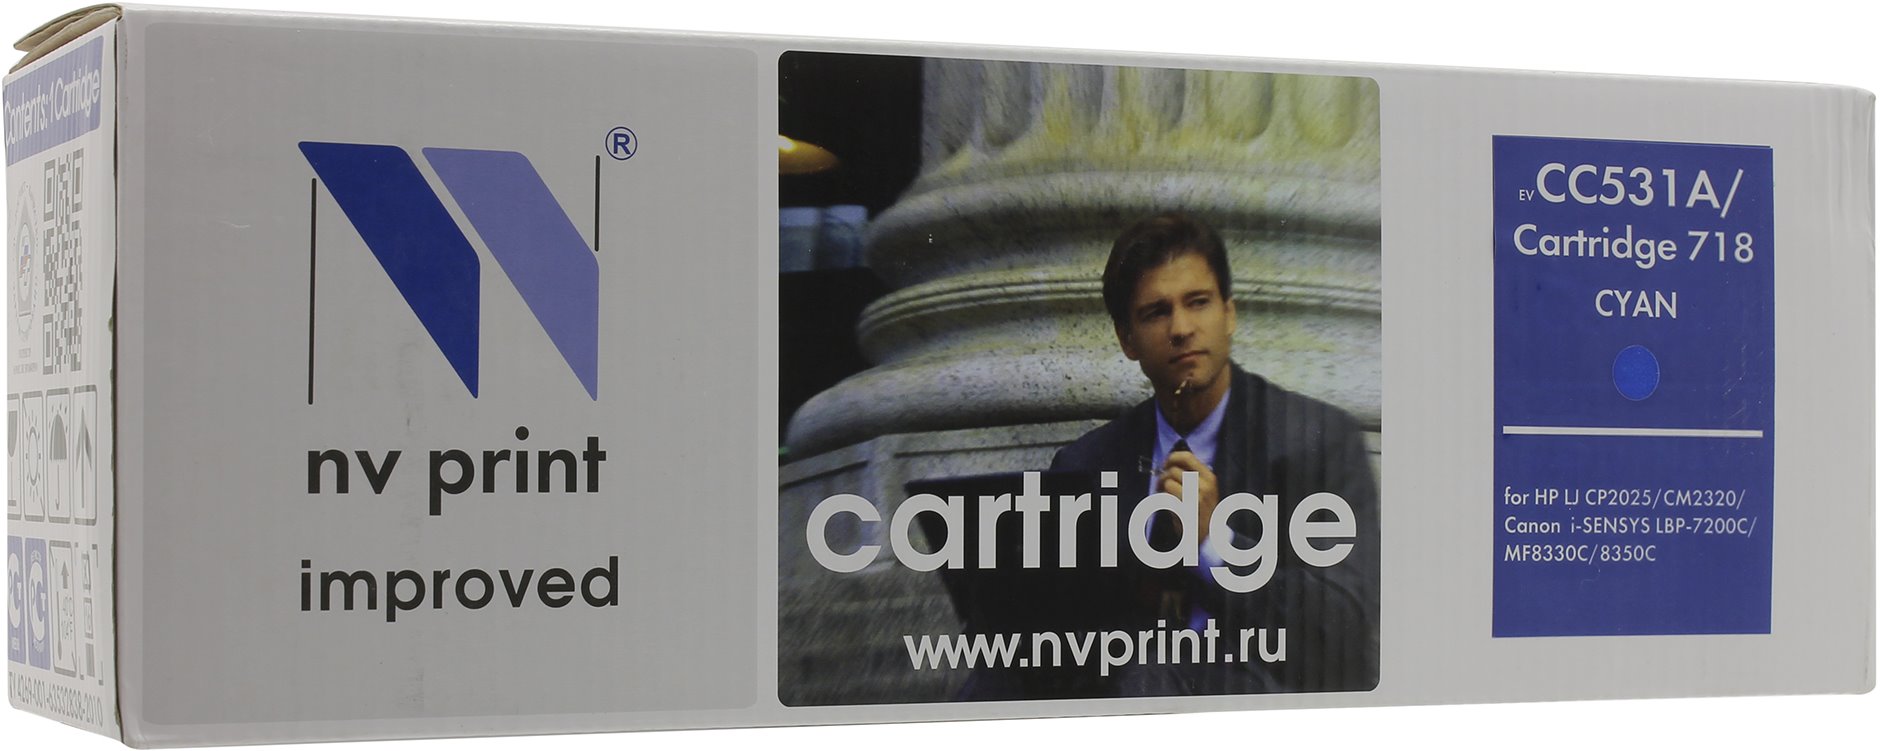   NV-Print  HP Color LaserJet CP2025/ CM2320 Cyan, CC531A